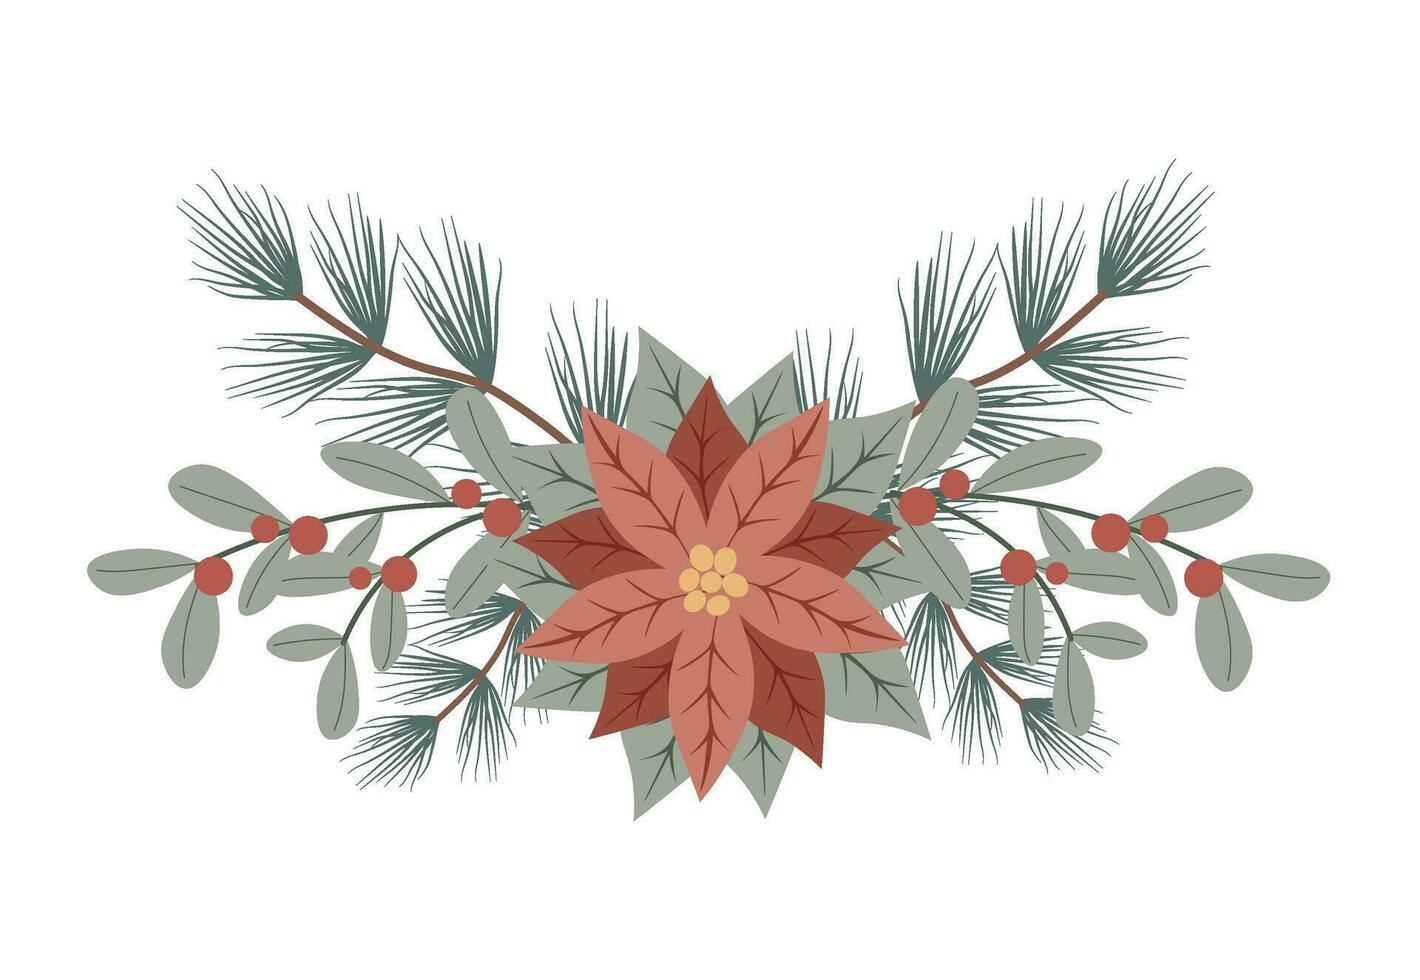 vinter- jul blommig sammansättning med pancetta och röd bär. design för högtider inbjudan kort, affisch, baner, hälsning kort, vykort vektor